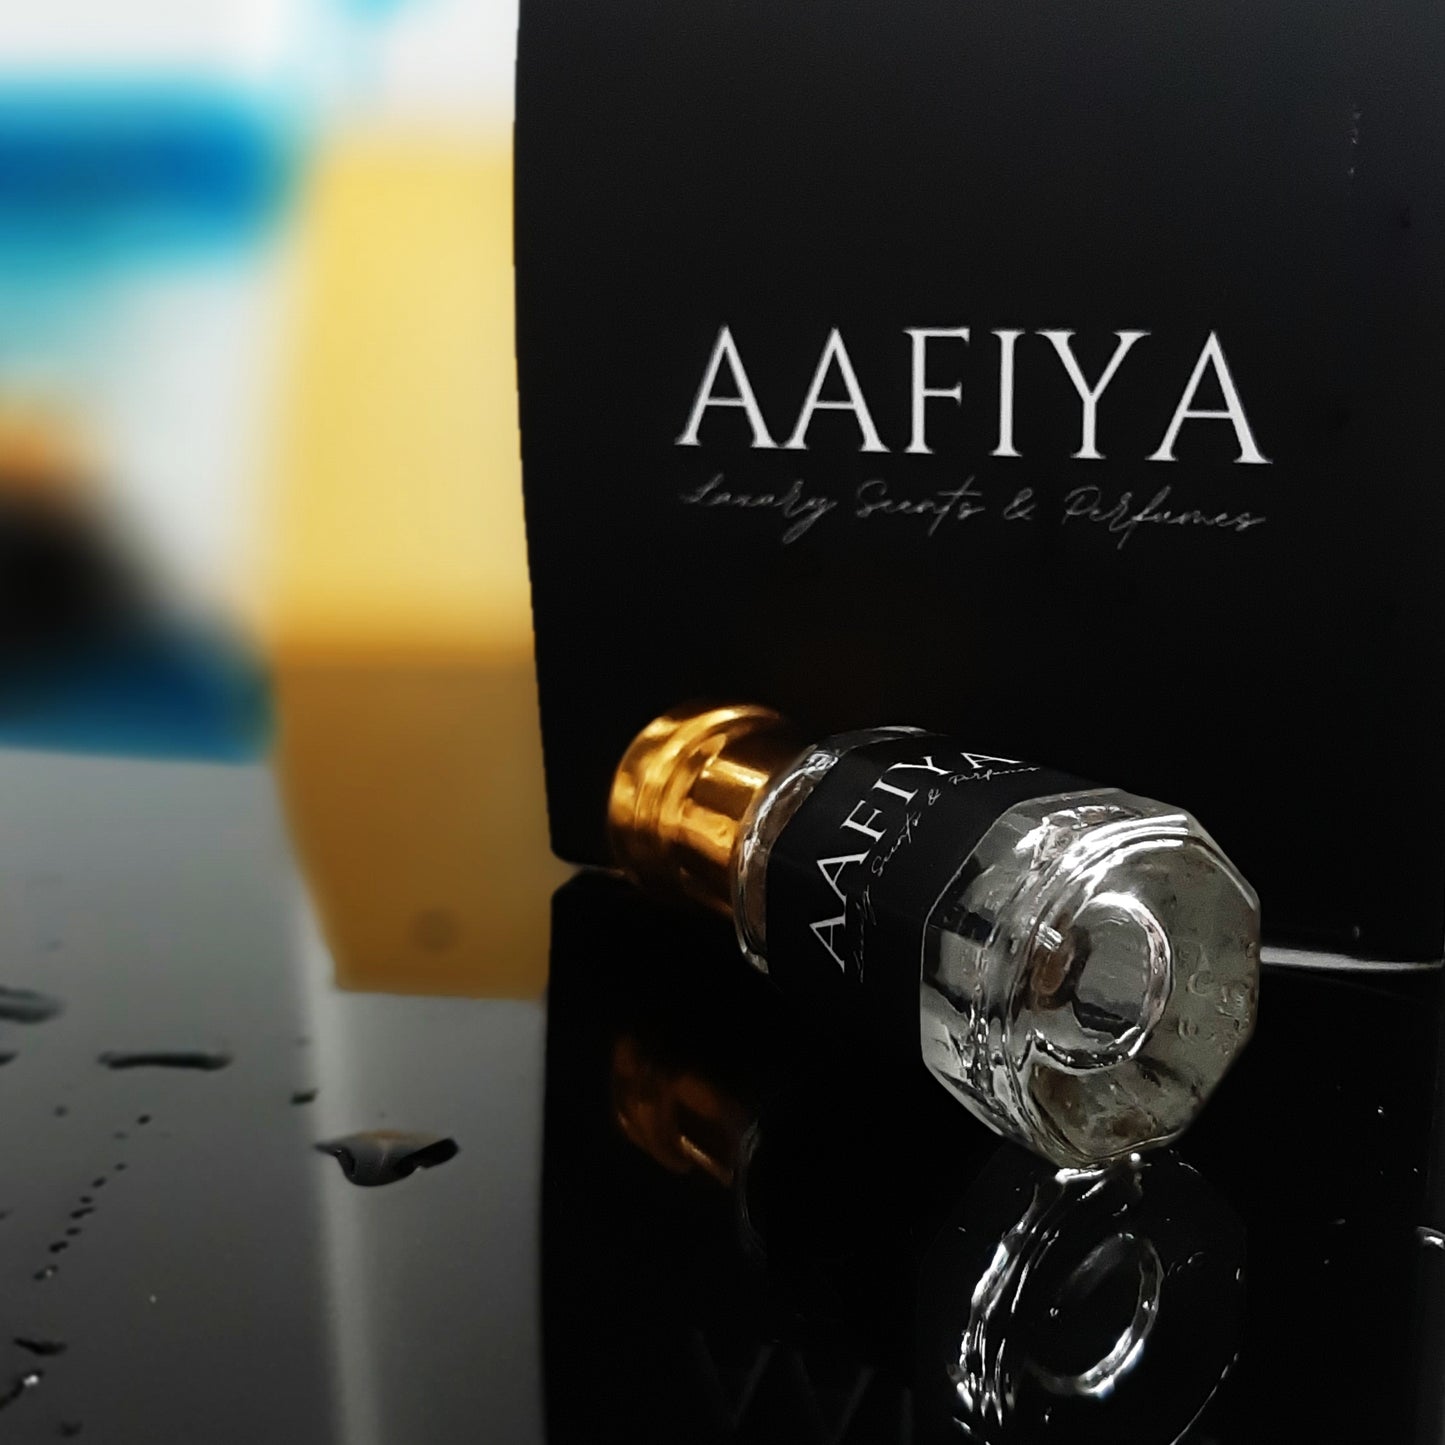 Dark Rebel - Aafiya Luxury Scents & Perfumes